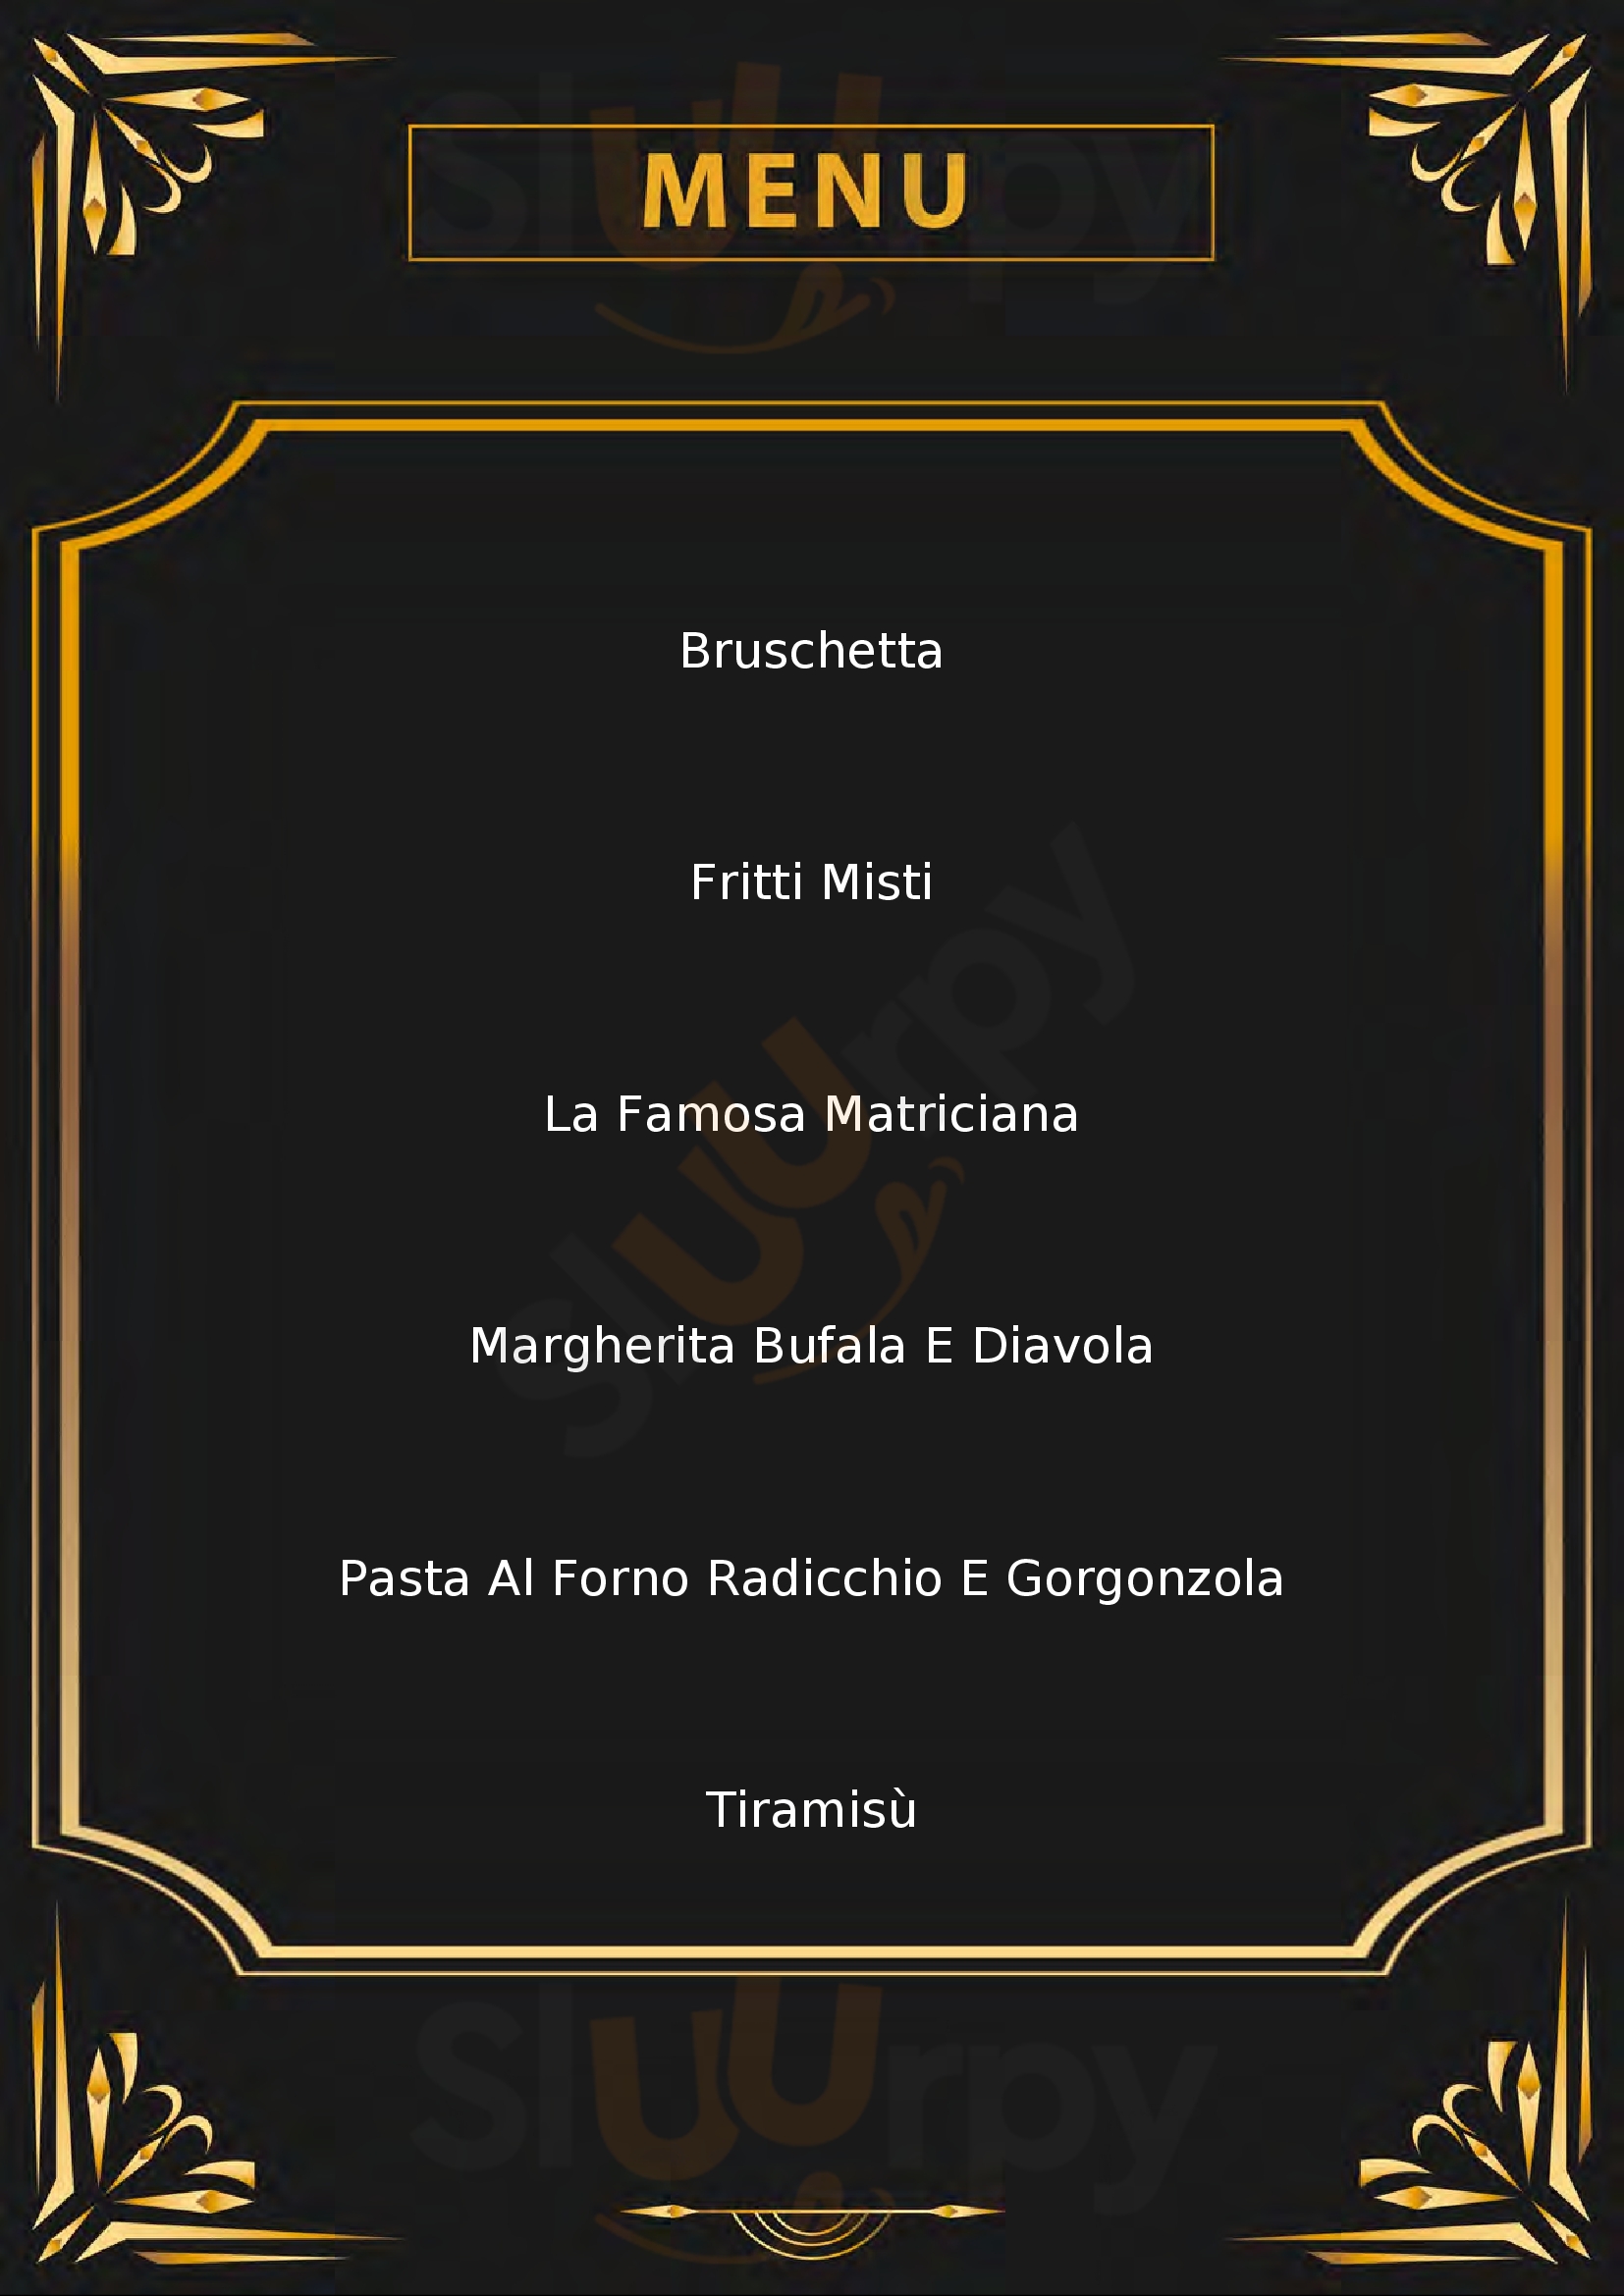 Osteria Pizzeria Trionfale Roma menù 1 pagina